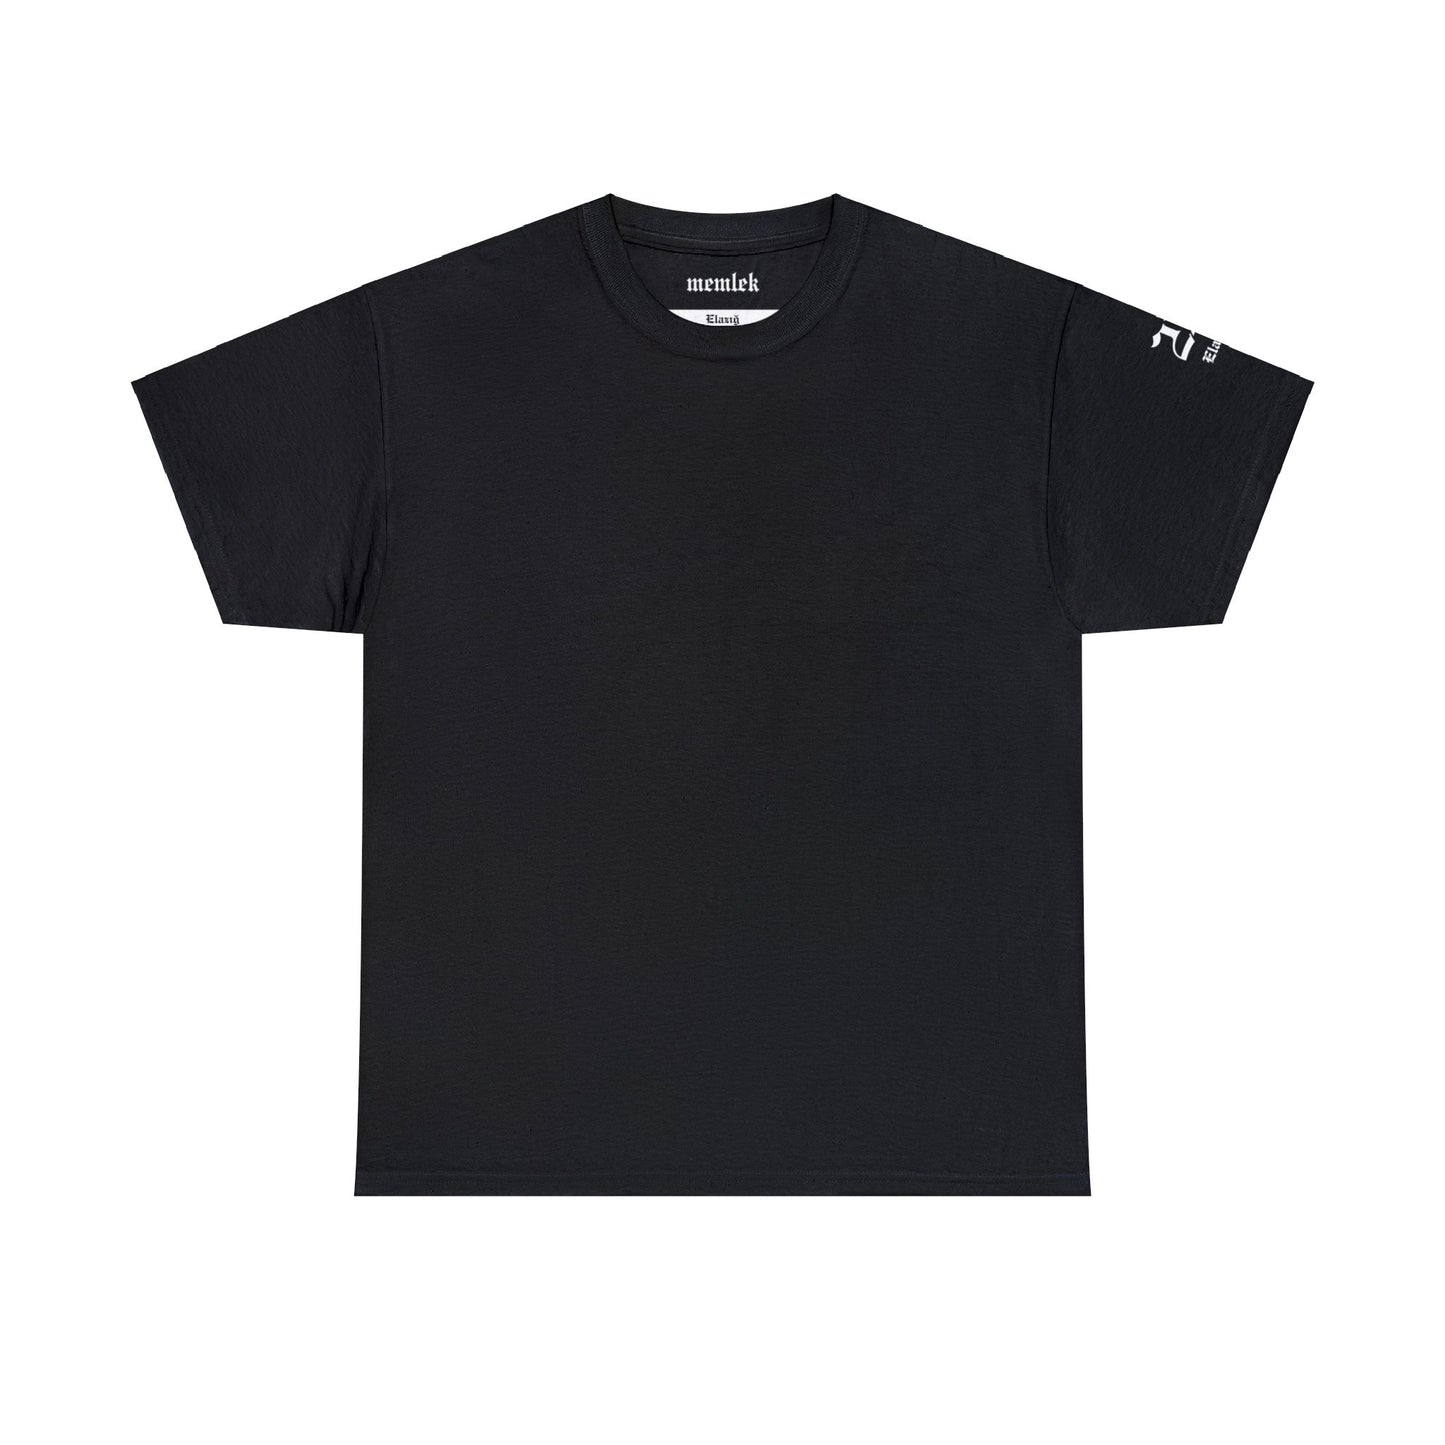 Şehirim - 23 Elazığ - T-Shirt - Back Print - Black